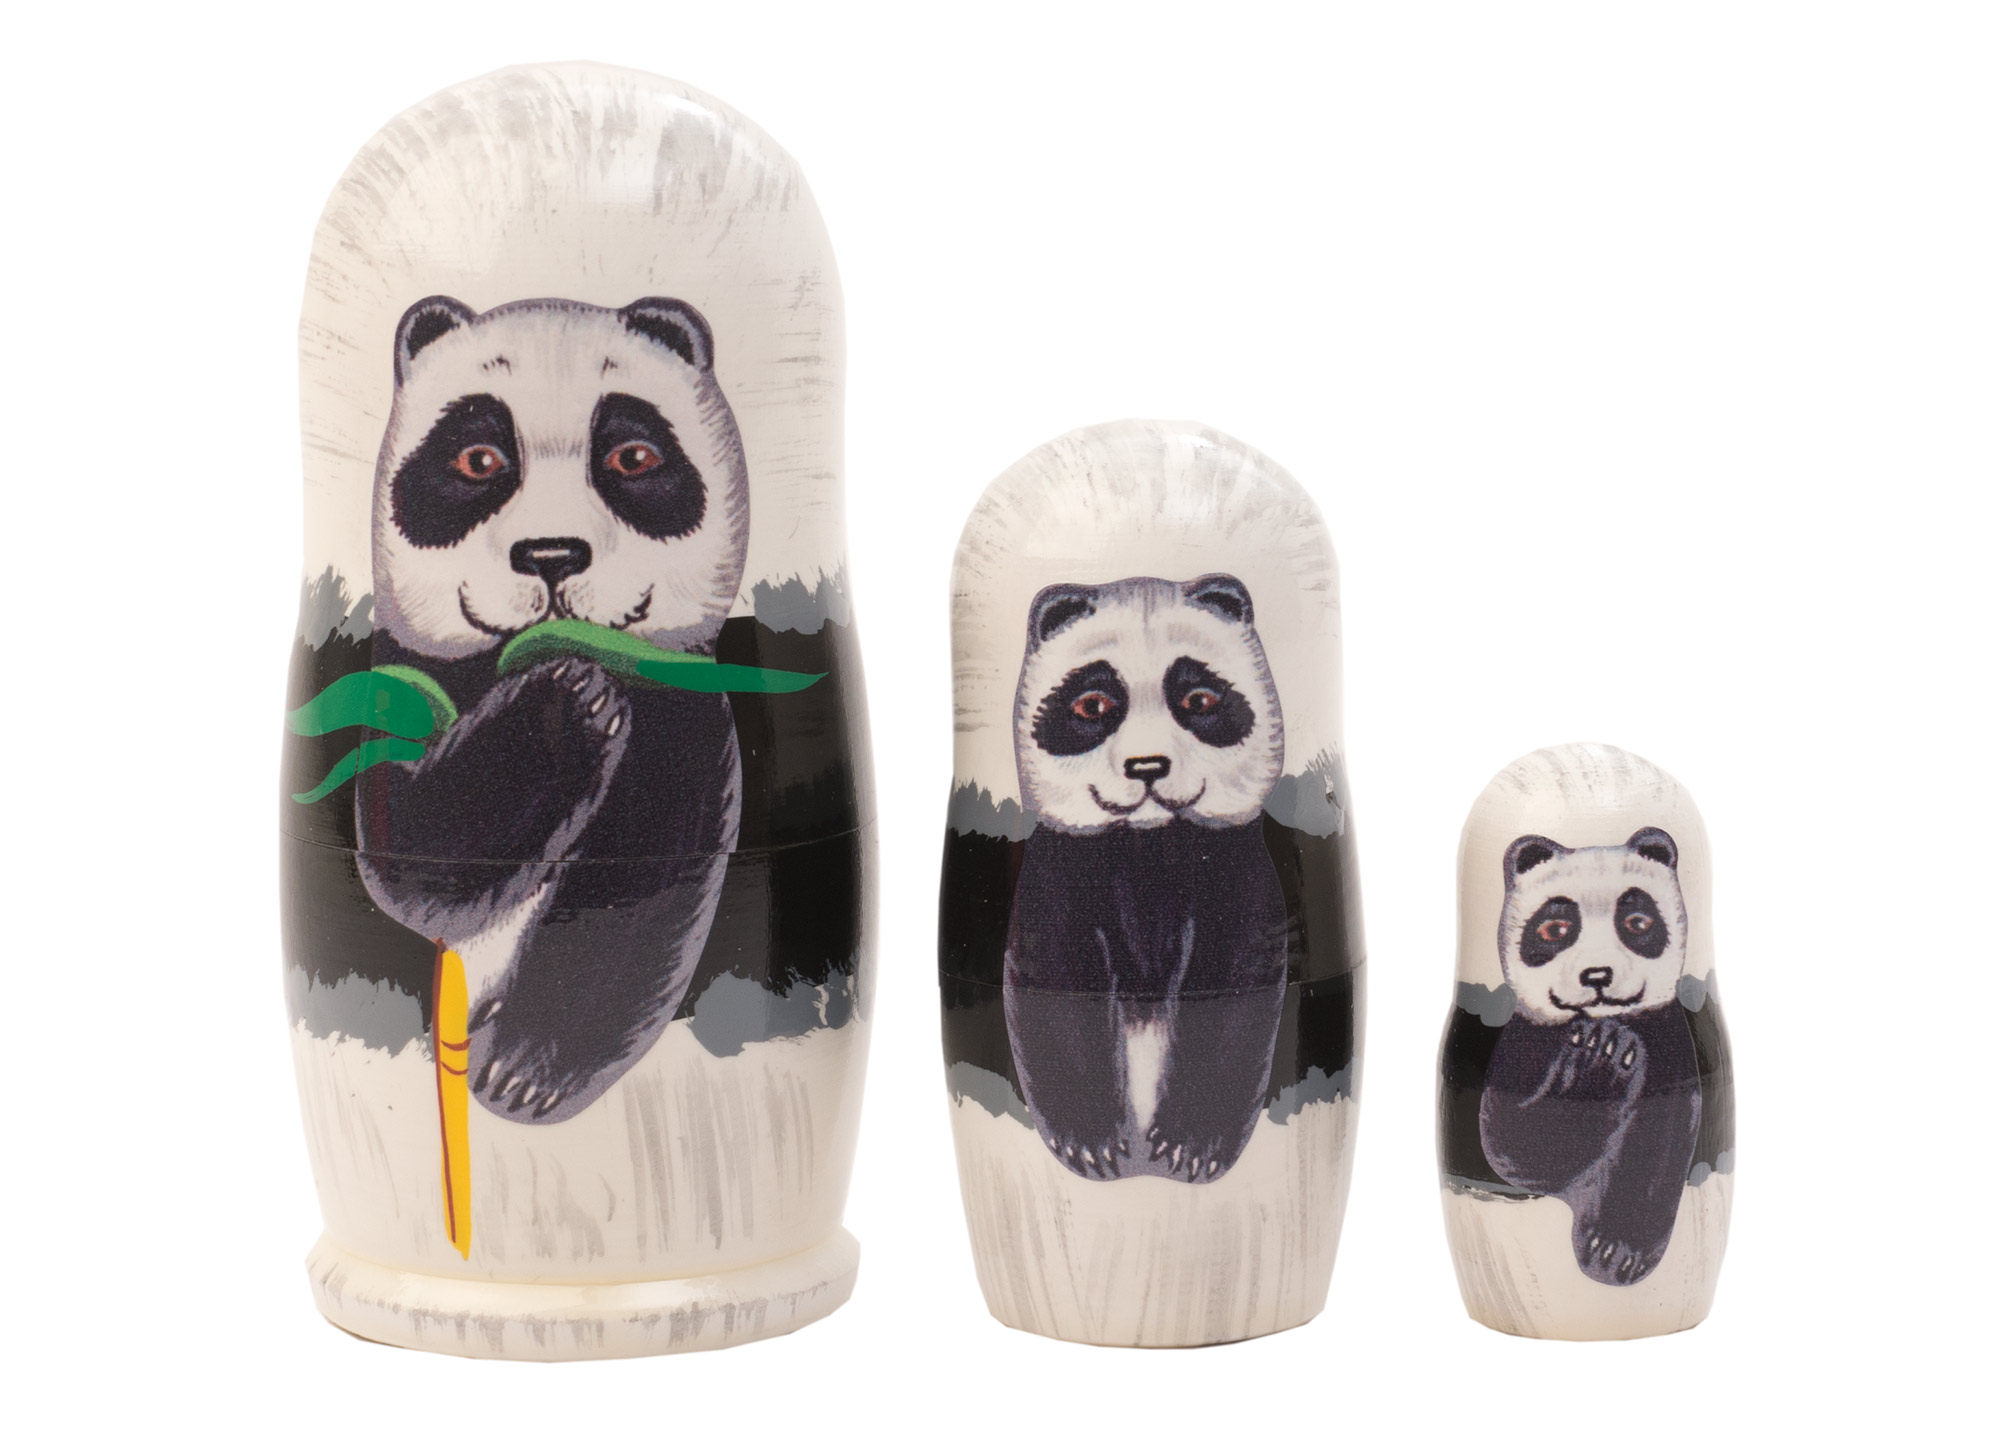 Buy Panda Nesting Doll 3pc./3.5" at GoldenCockerel.com